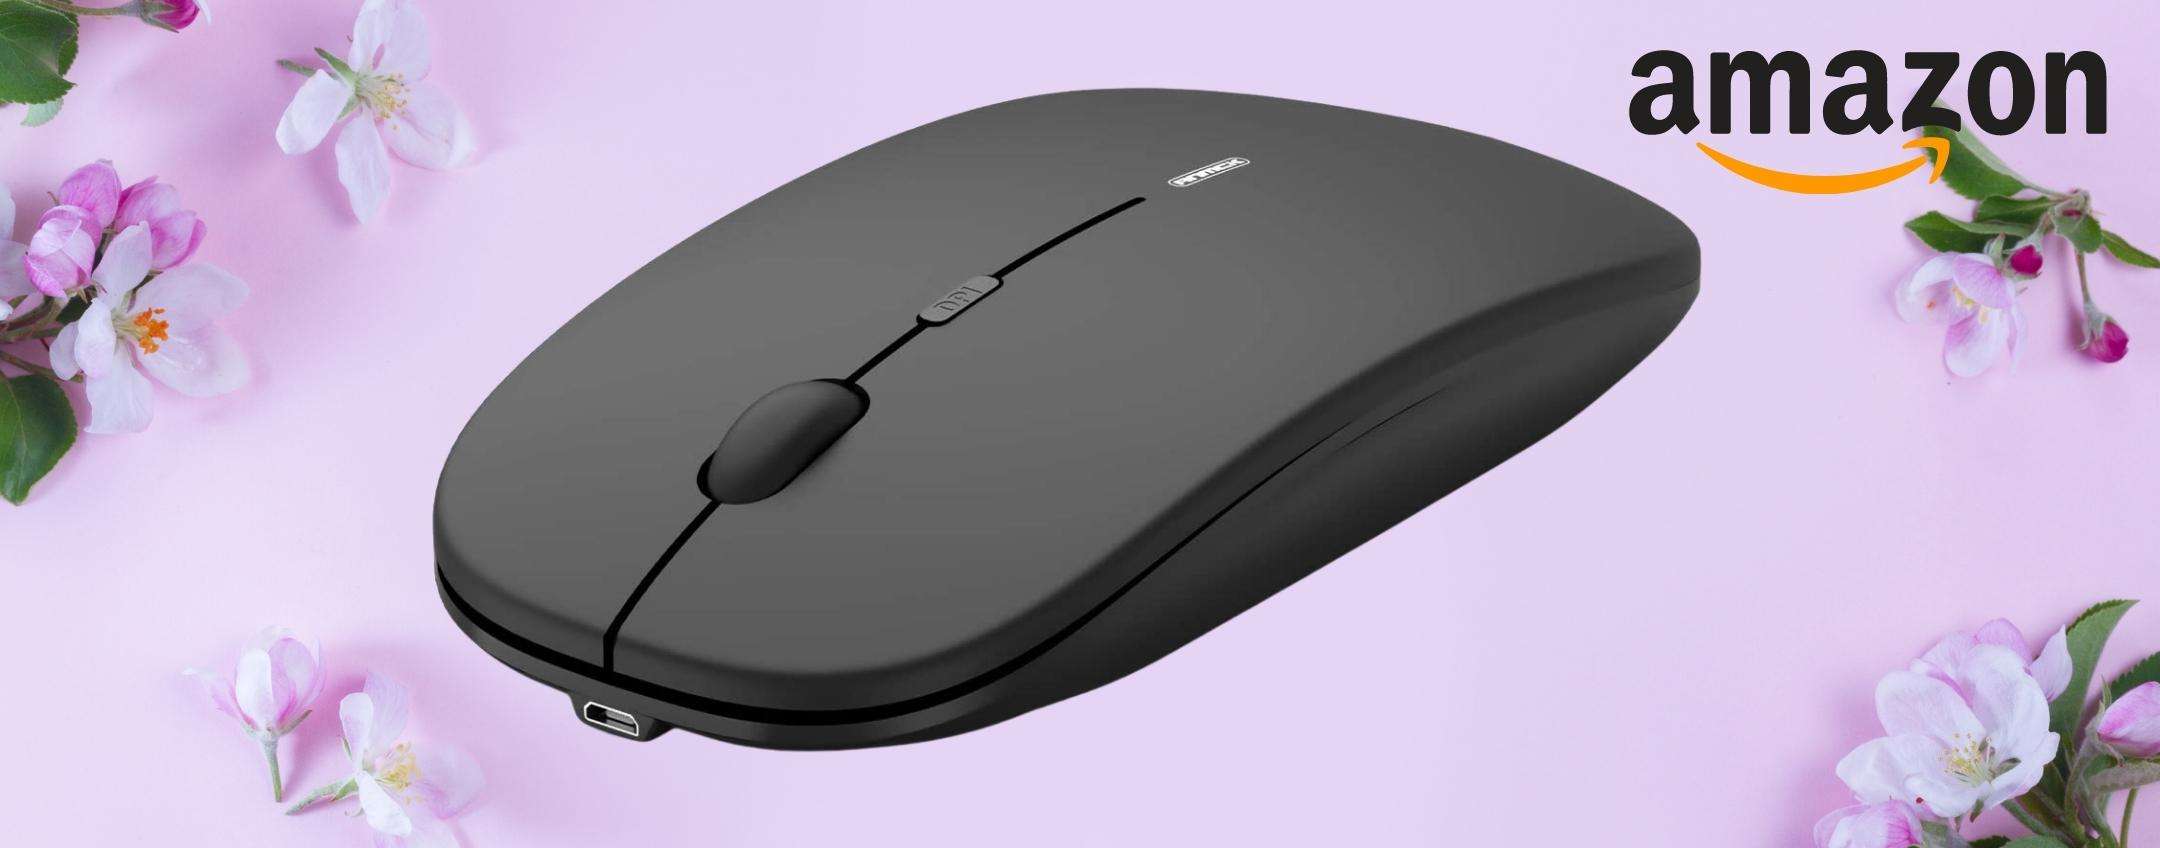 BOOM BABY: il mouse wireless dei sogni esiste e costa appena 11€